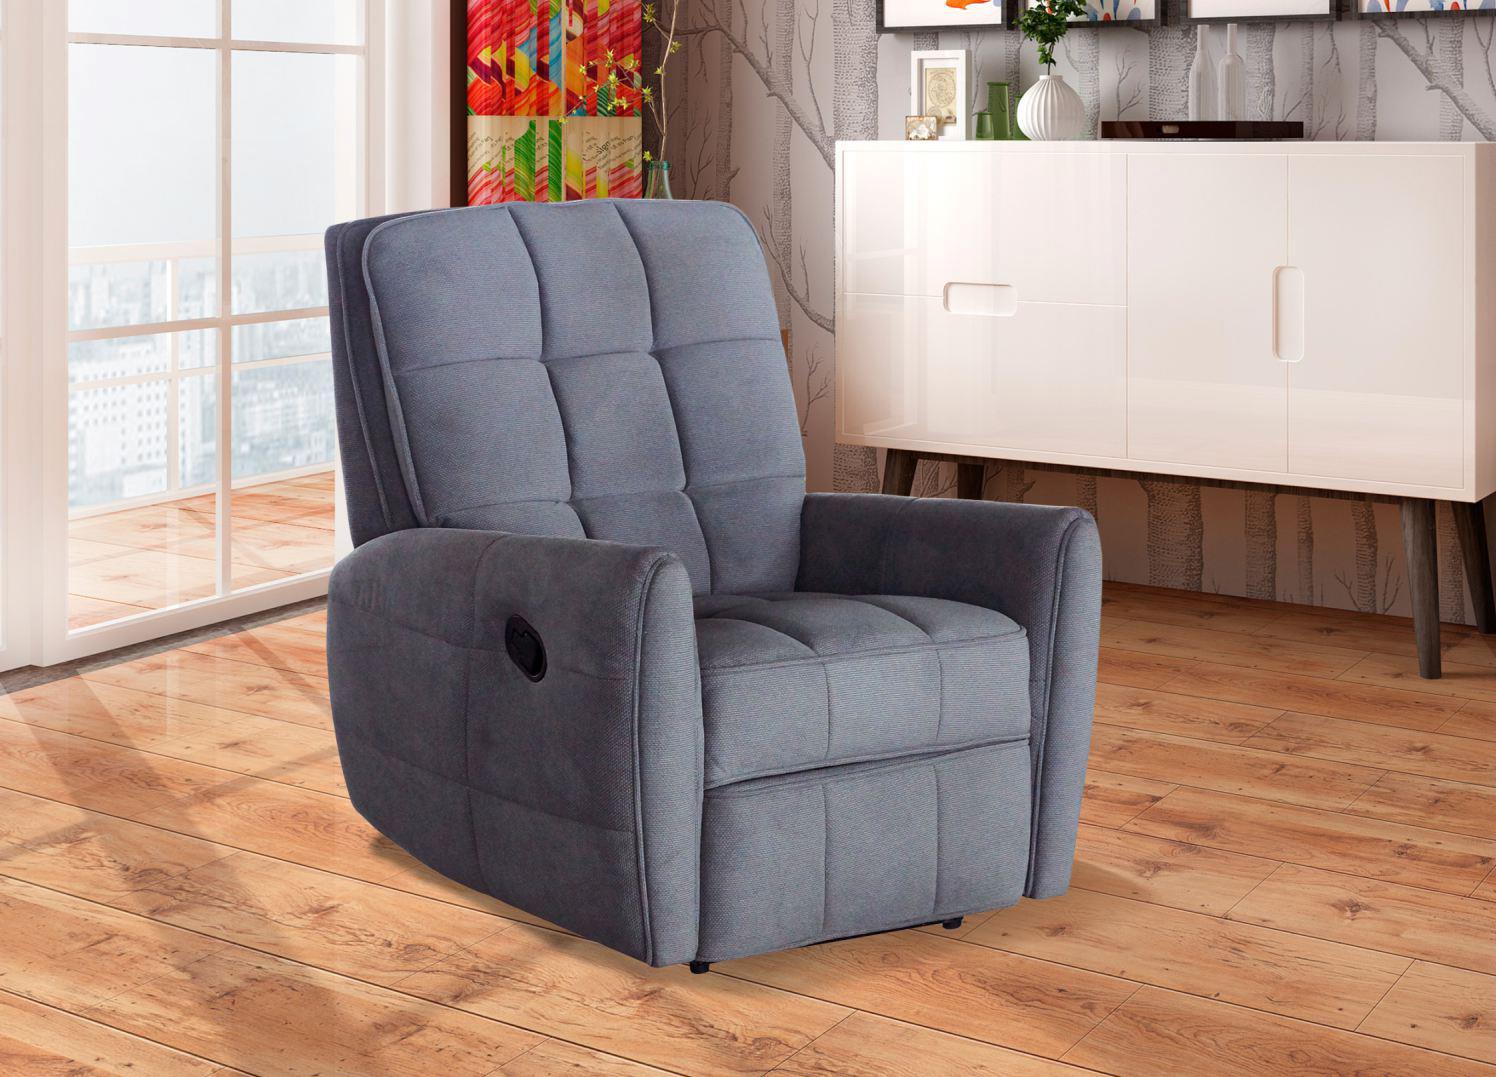 Single Chairs Sofa